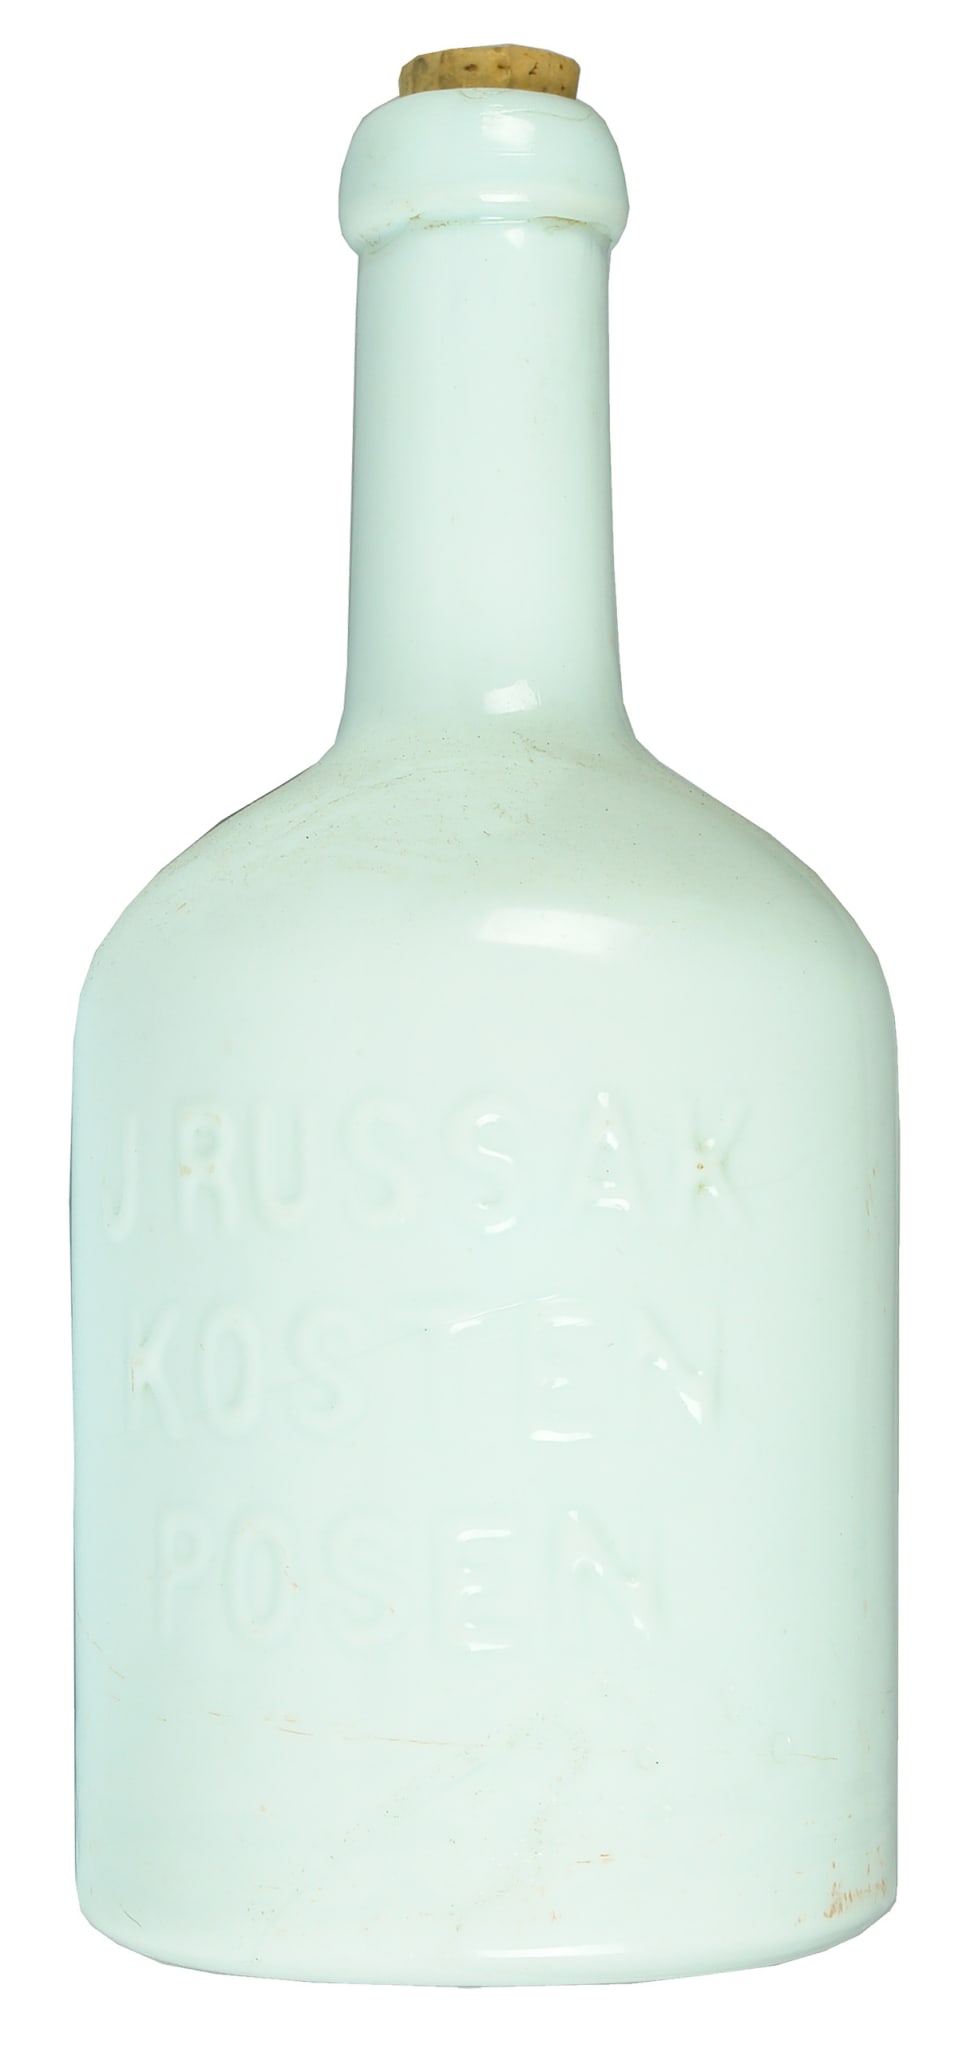 Russak Kosten Posen Antique Bitters Bottle